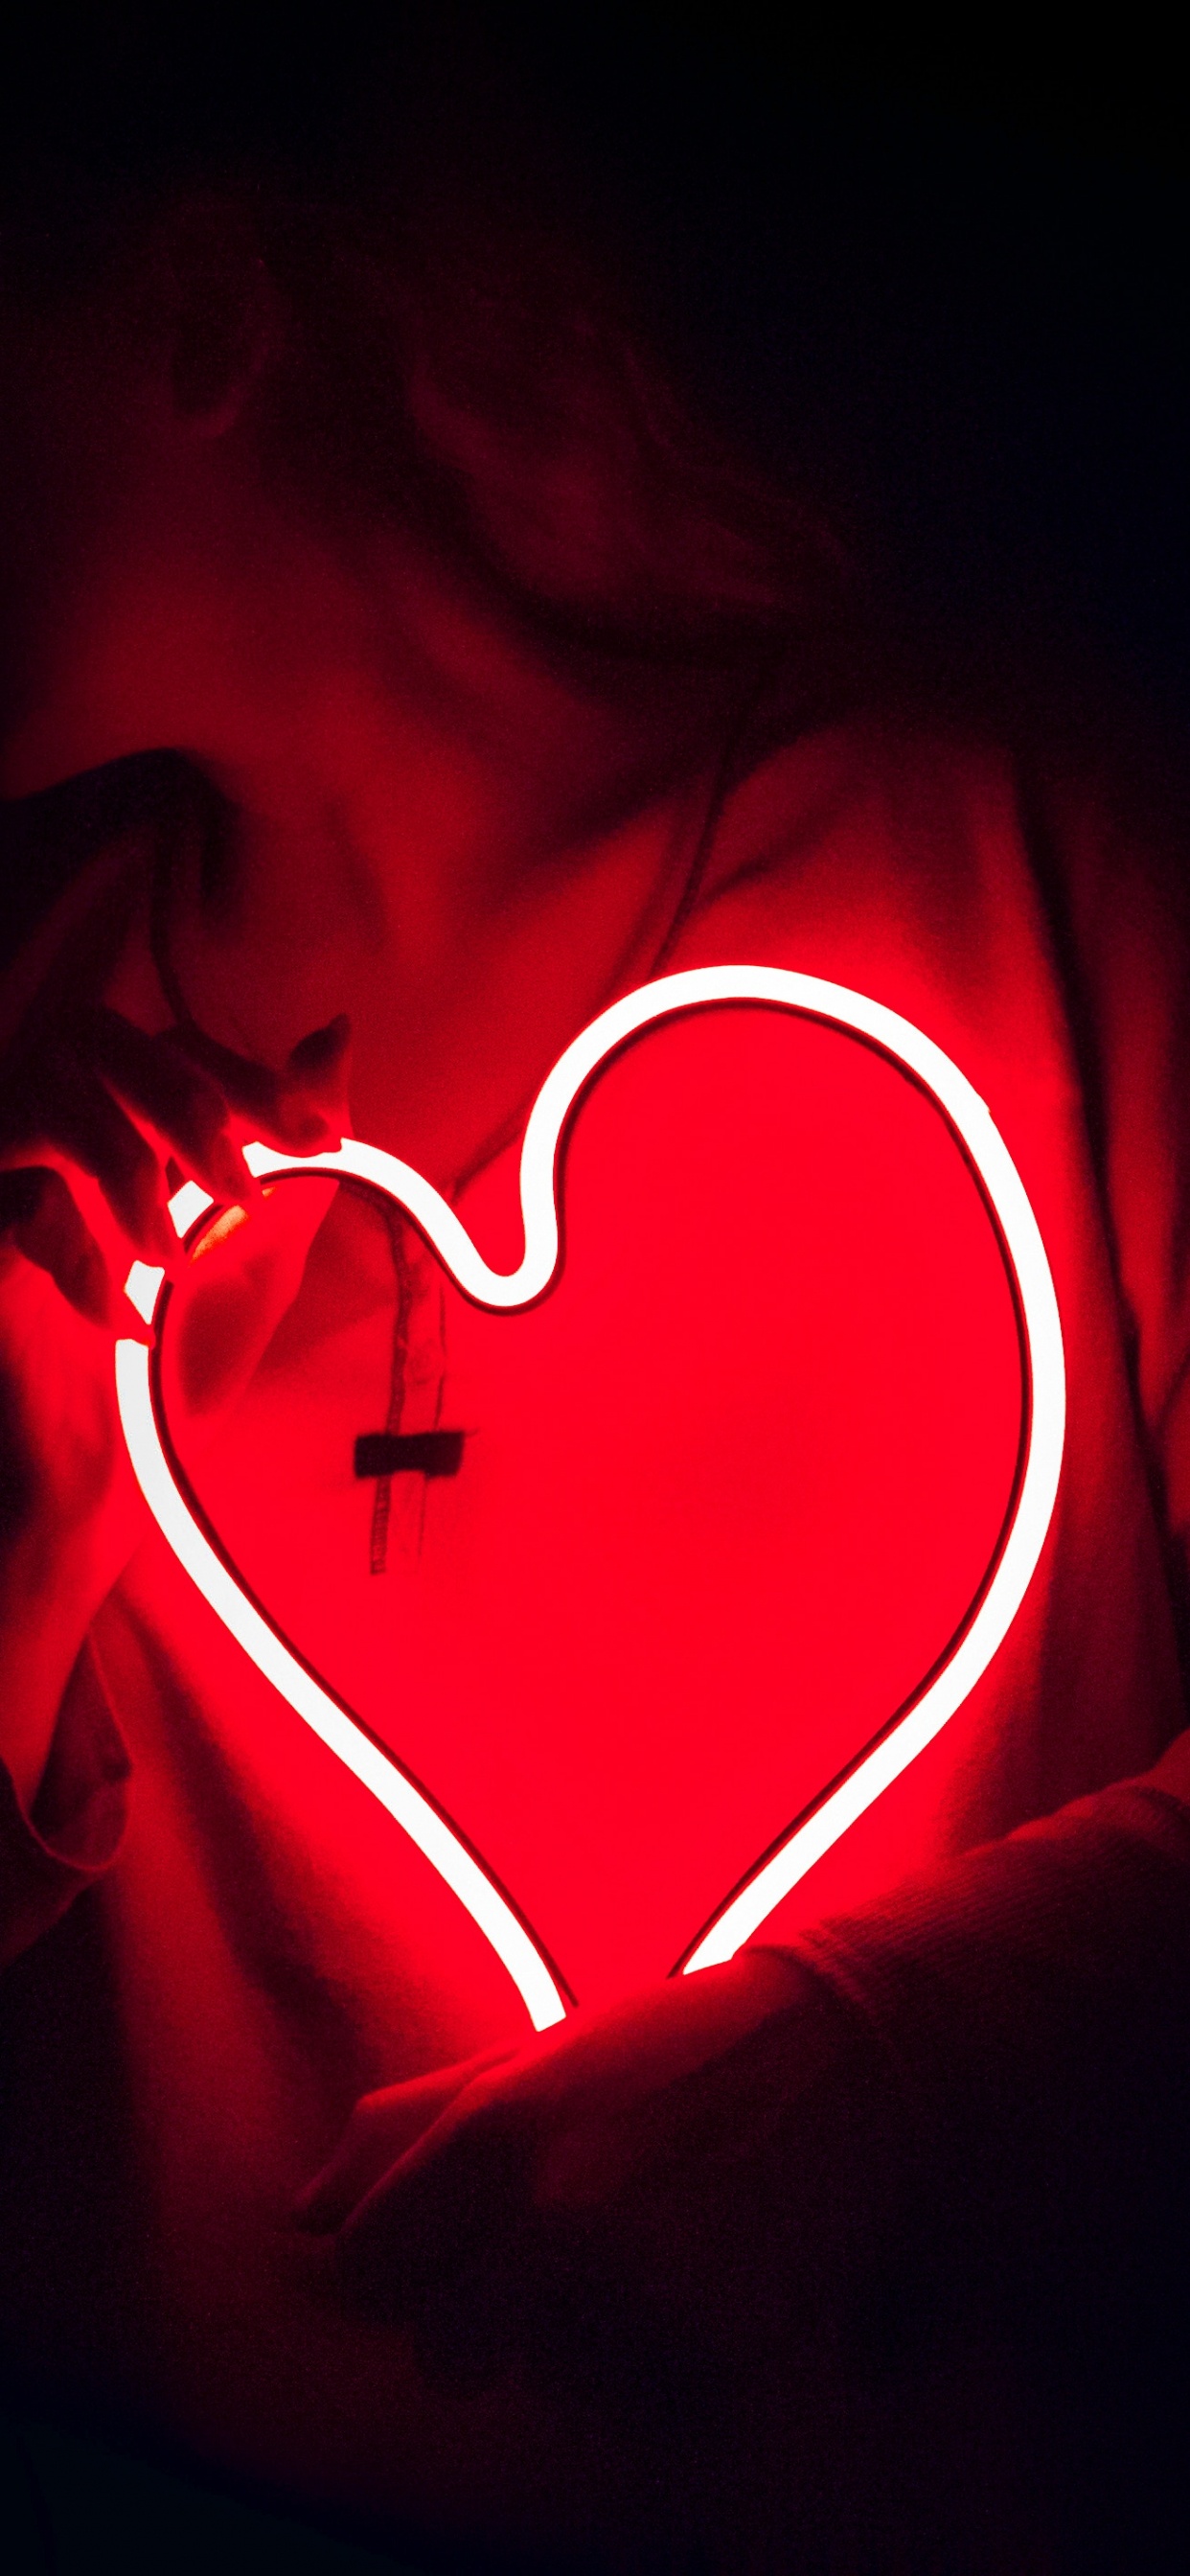 心脏, 红色的, 爱情, 光, 器官 壁纸 1242x2688 允许